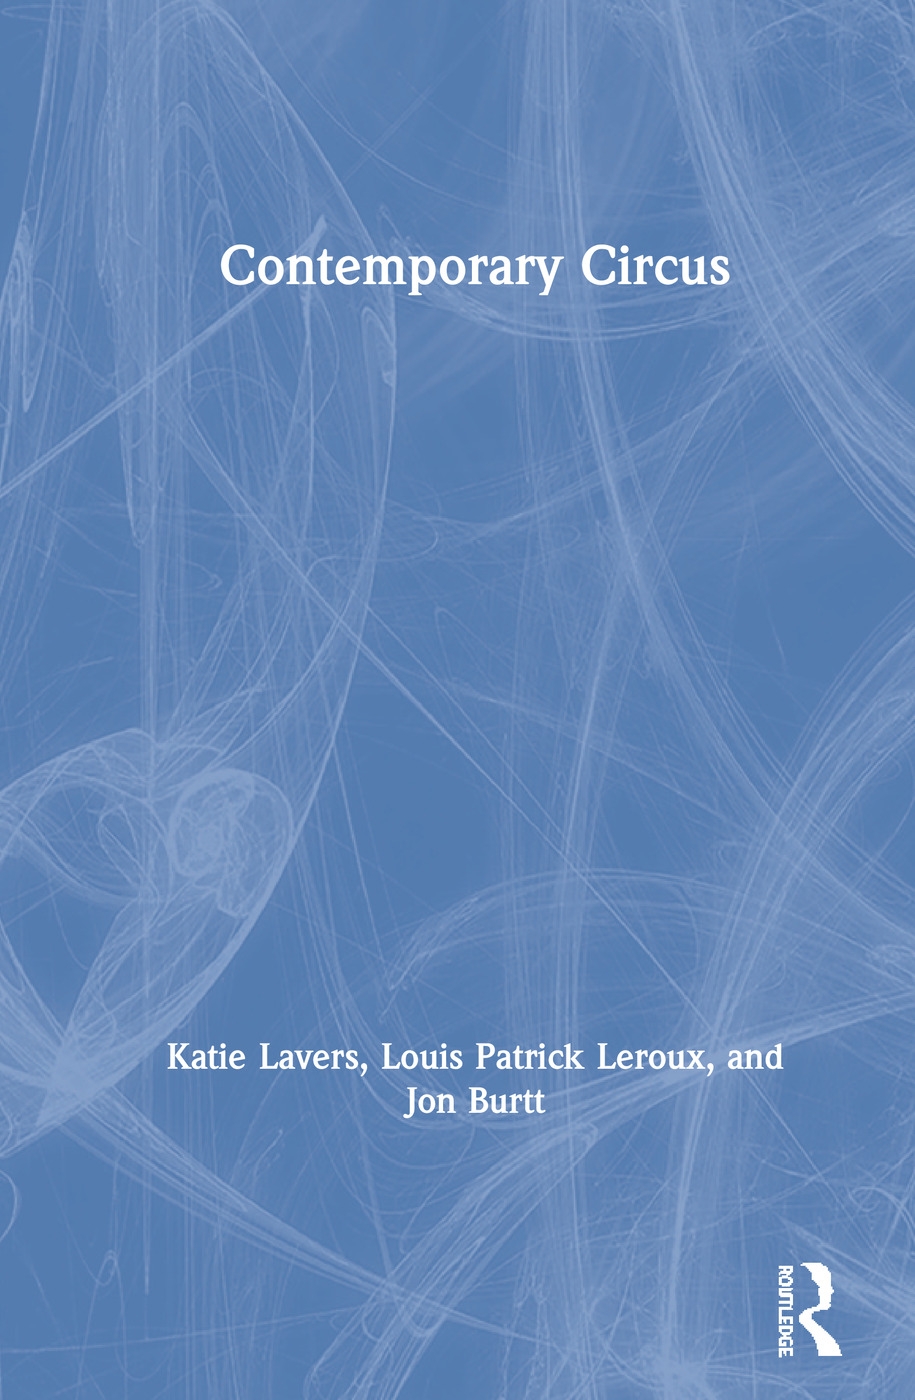 Contemporary Circus